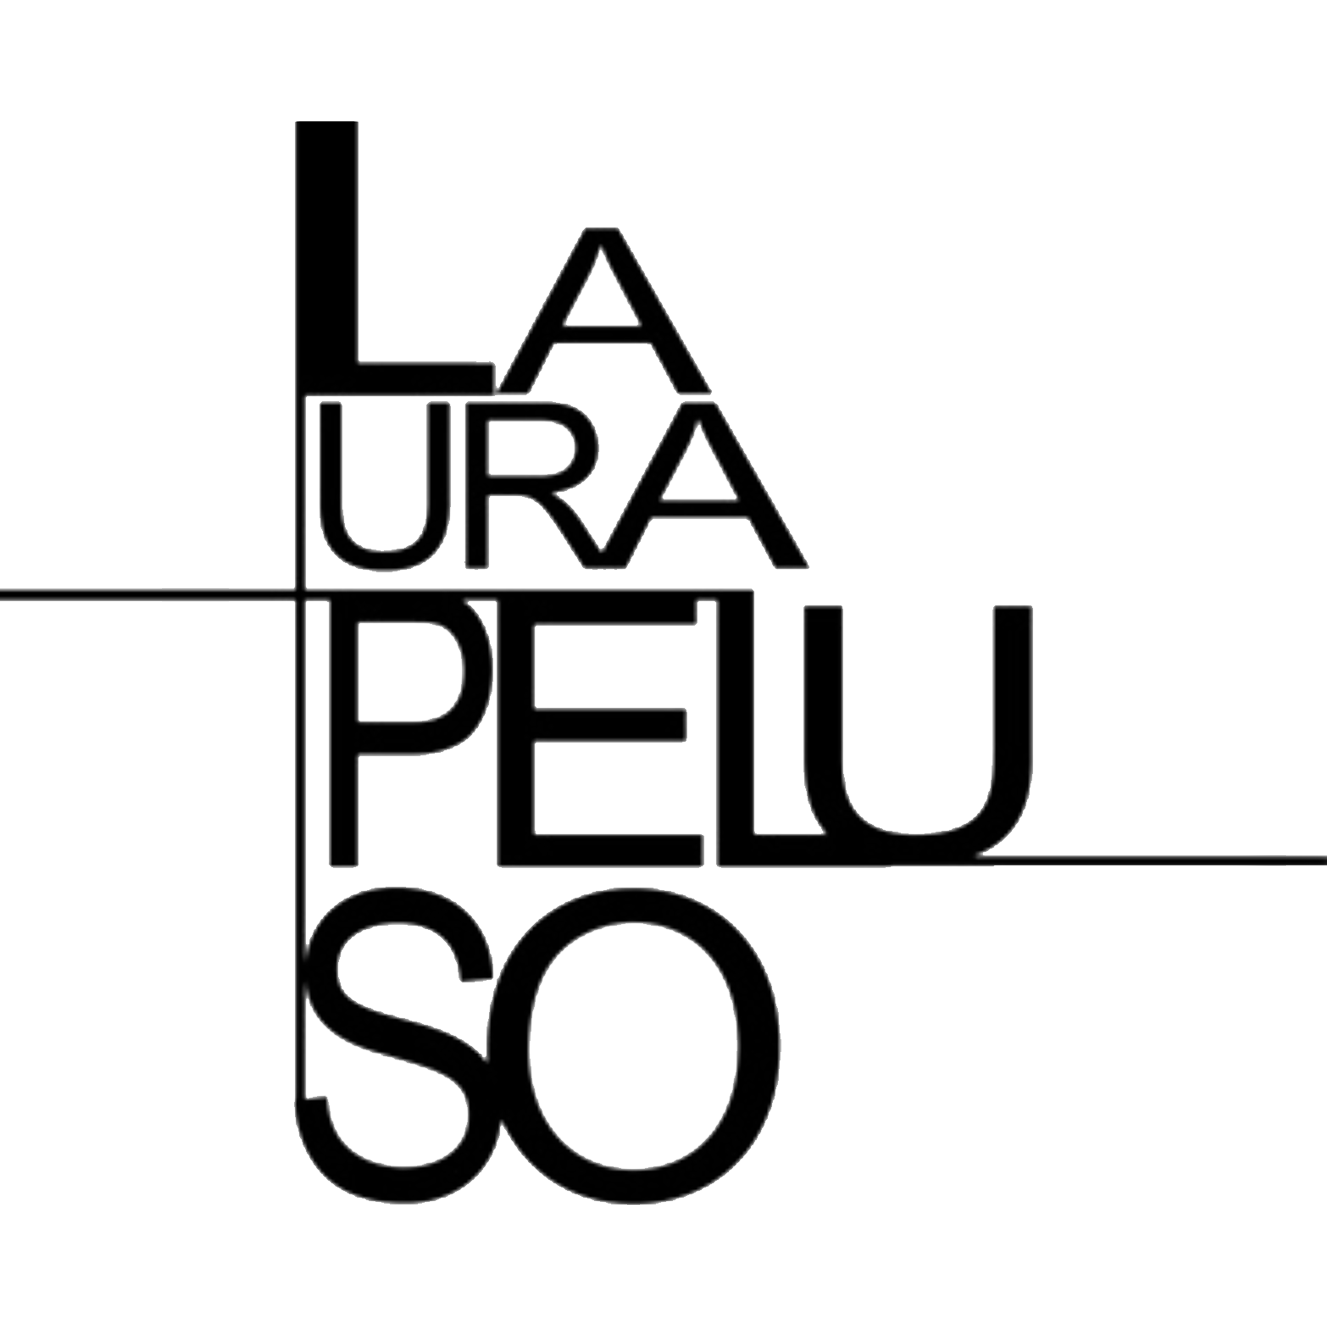 Laura Peluso